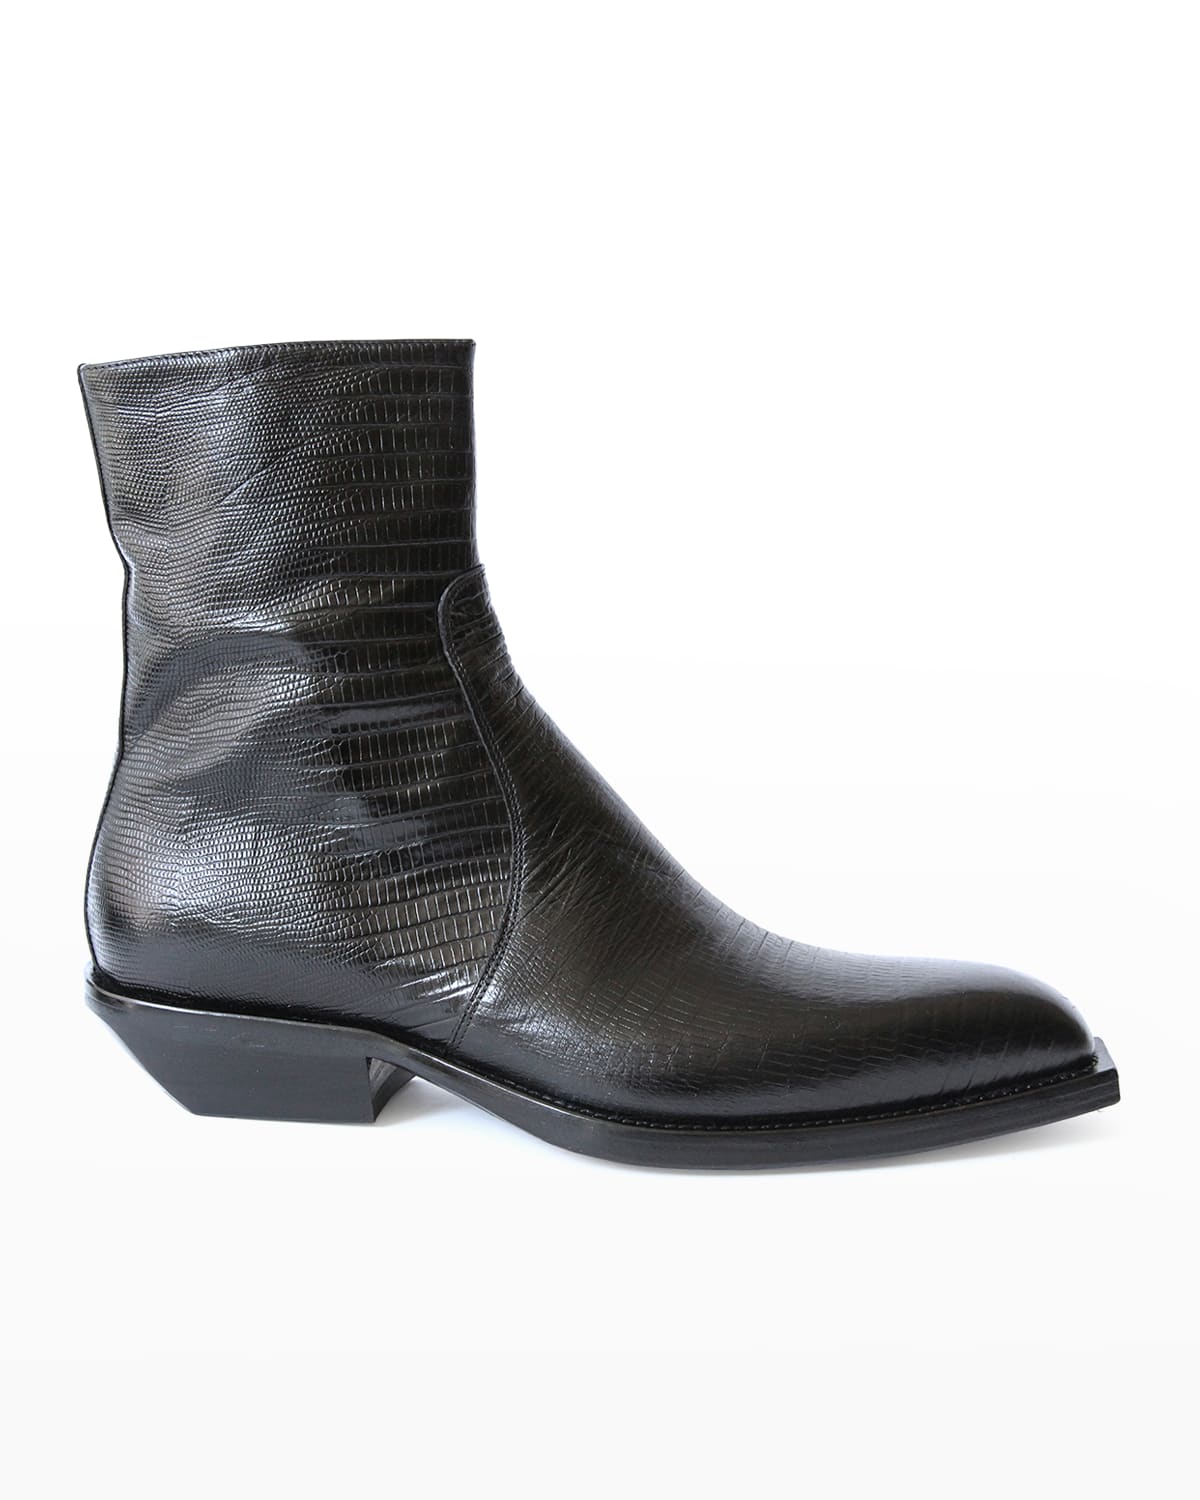 Men's Lizard-Embossed Western Boots